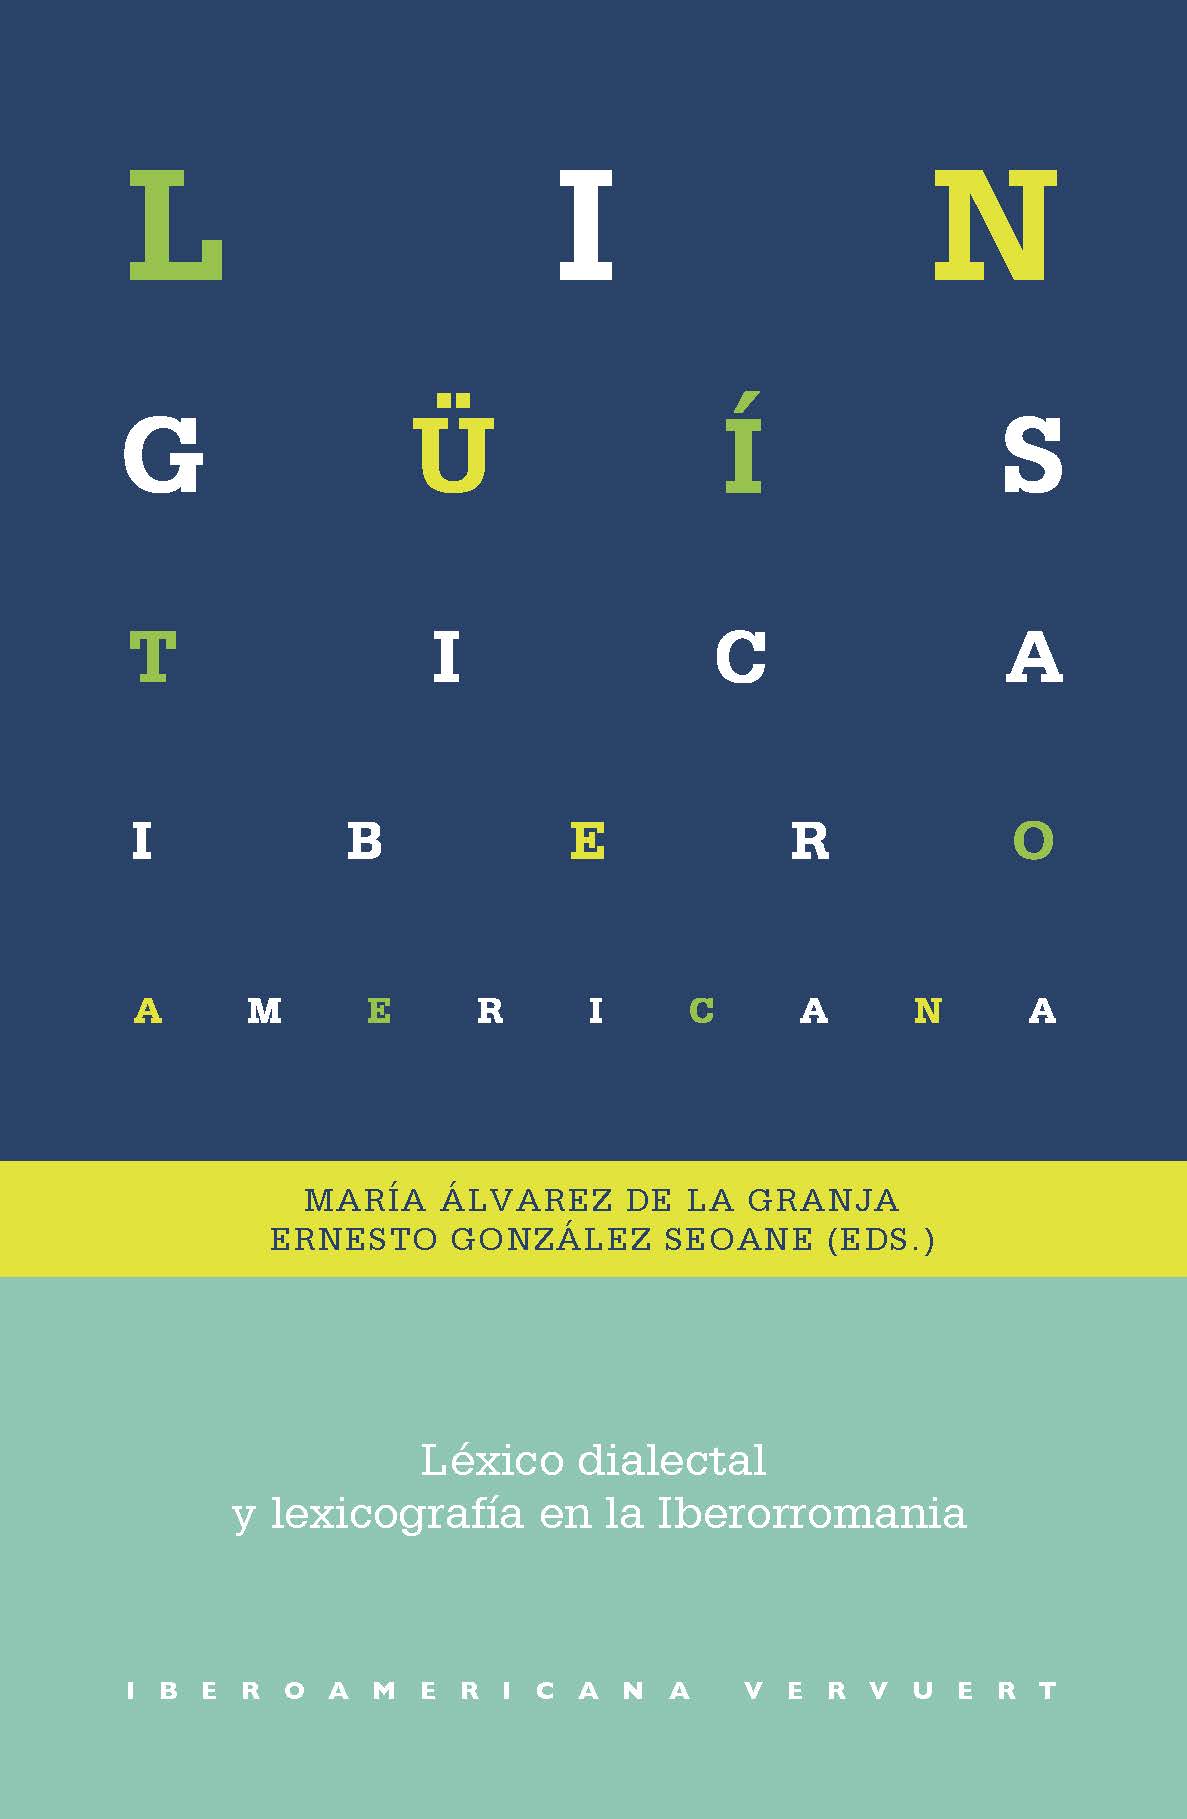 Léxico dialectal y lexicografía en la Iberorromania. 9788491920007